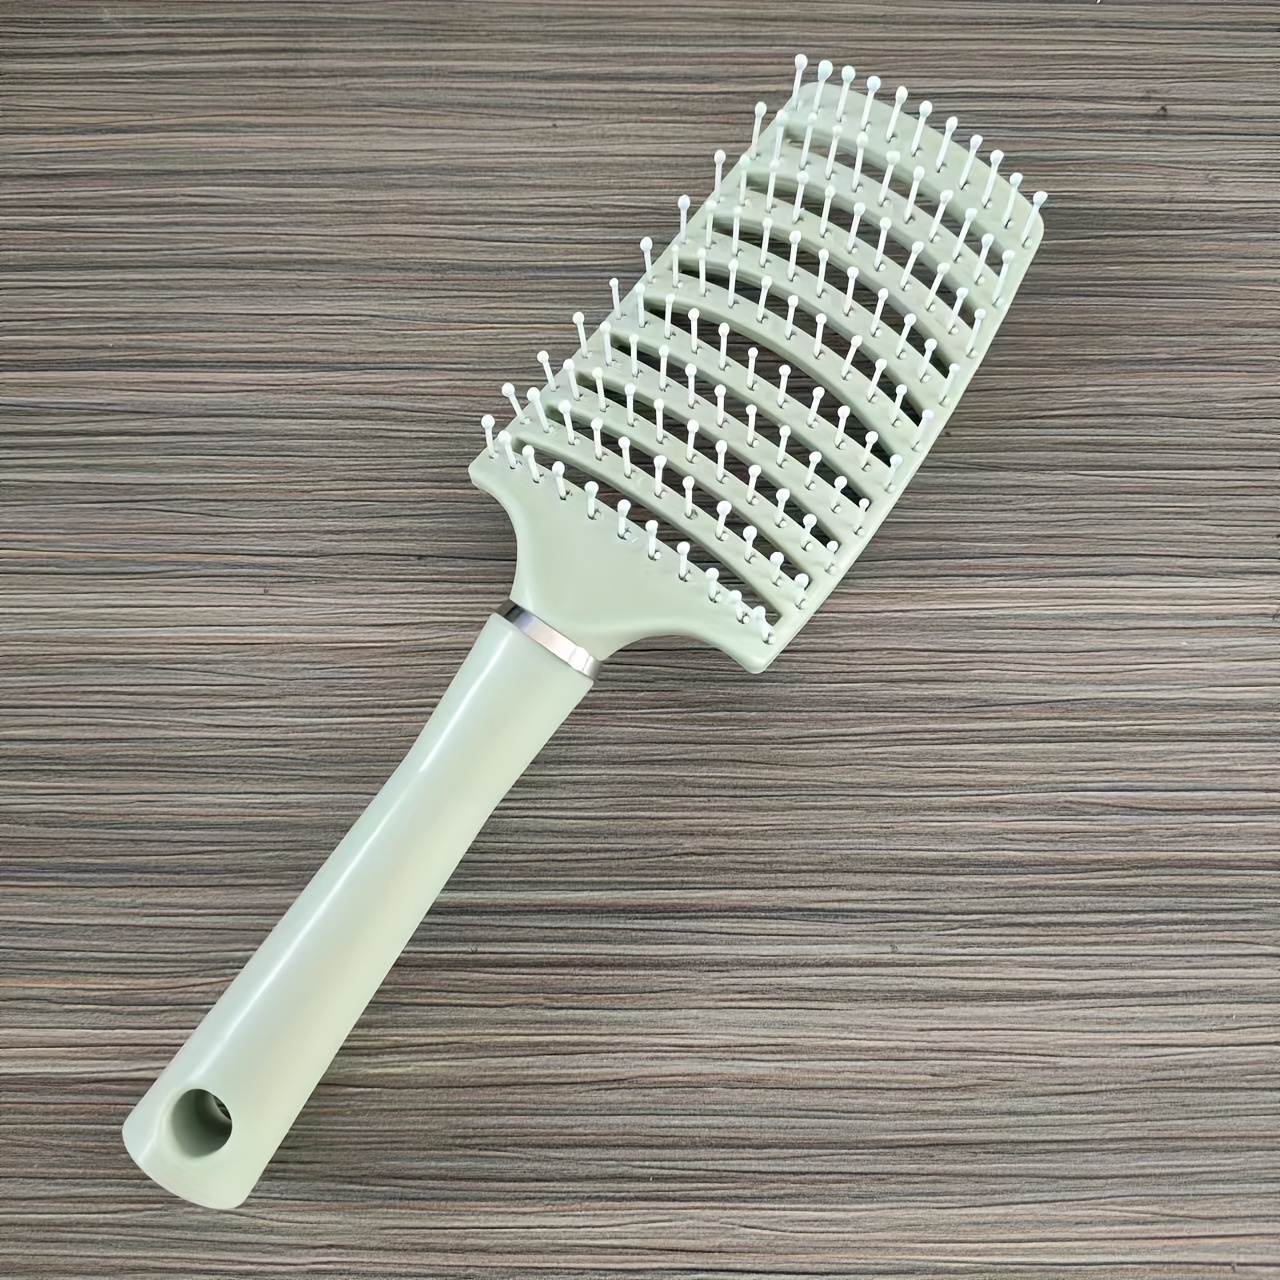 Hair Brush Detangling Curved Vented Hair Brushes For Women Men Wet